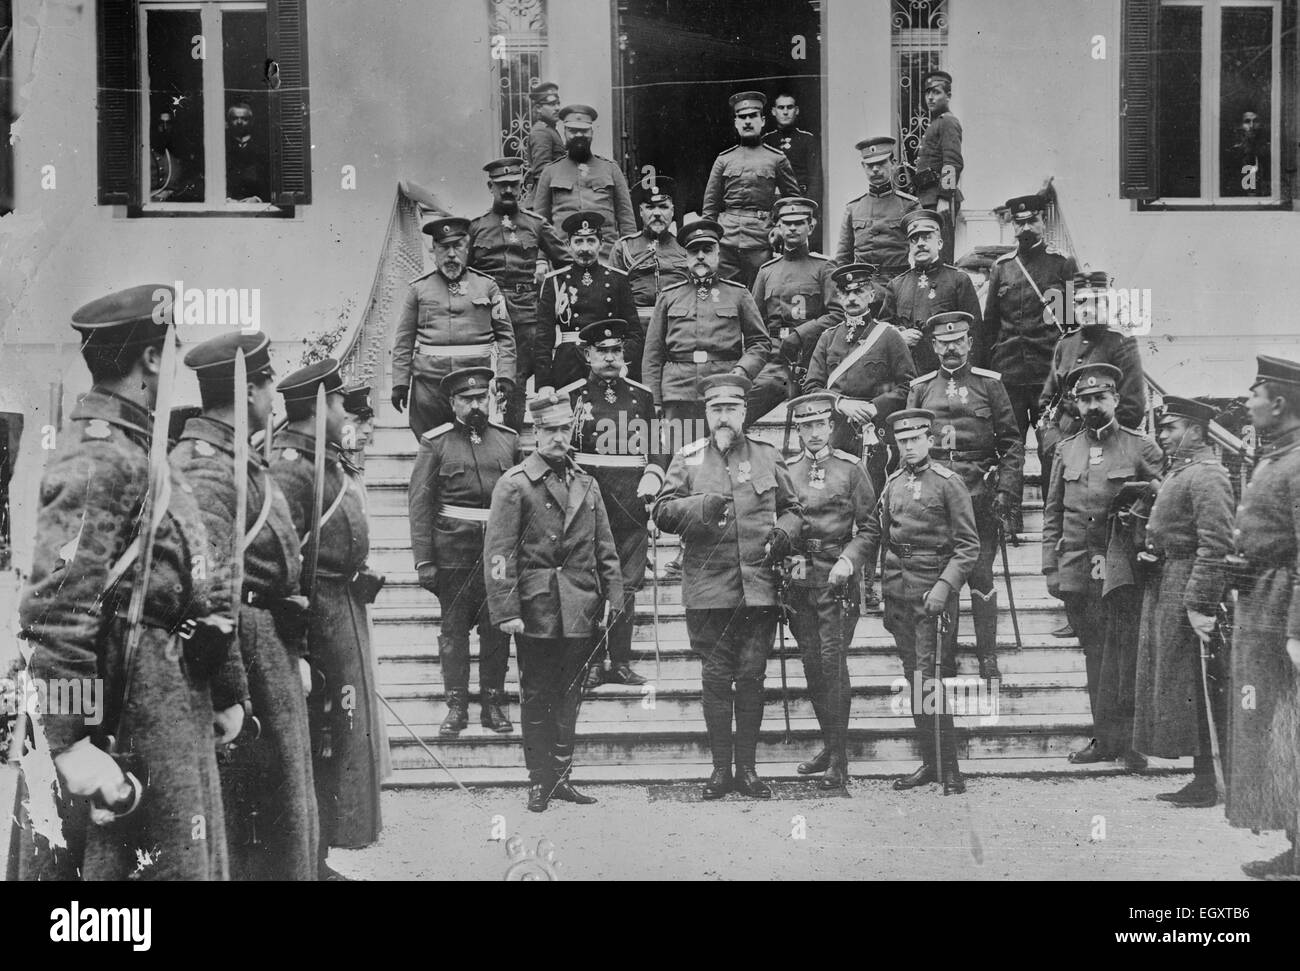 Le Roi George I de Grèce visite le Tsar bulgare Ferdinand dans le quartier général de l'armée bulgare dans la ville de Thessalonique pendant la visite de ce dernier pendant la Première Guerre des Balkans. Décembre 1912 Banque D'Images